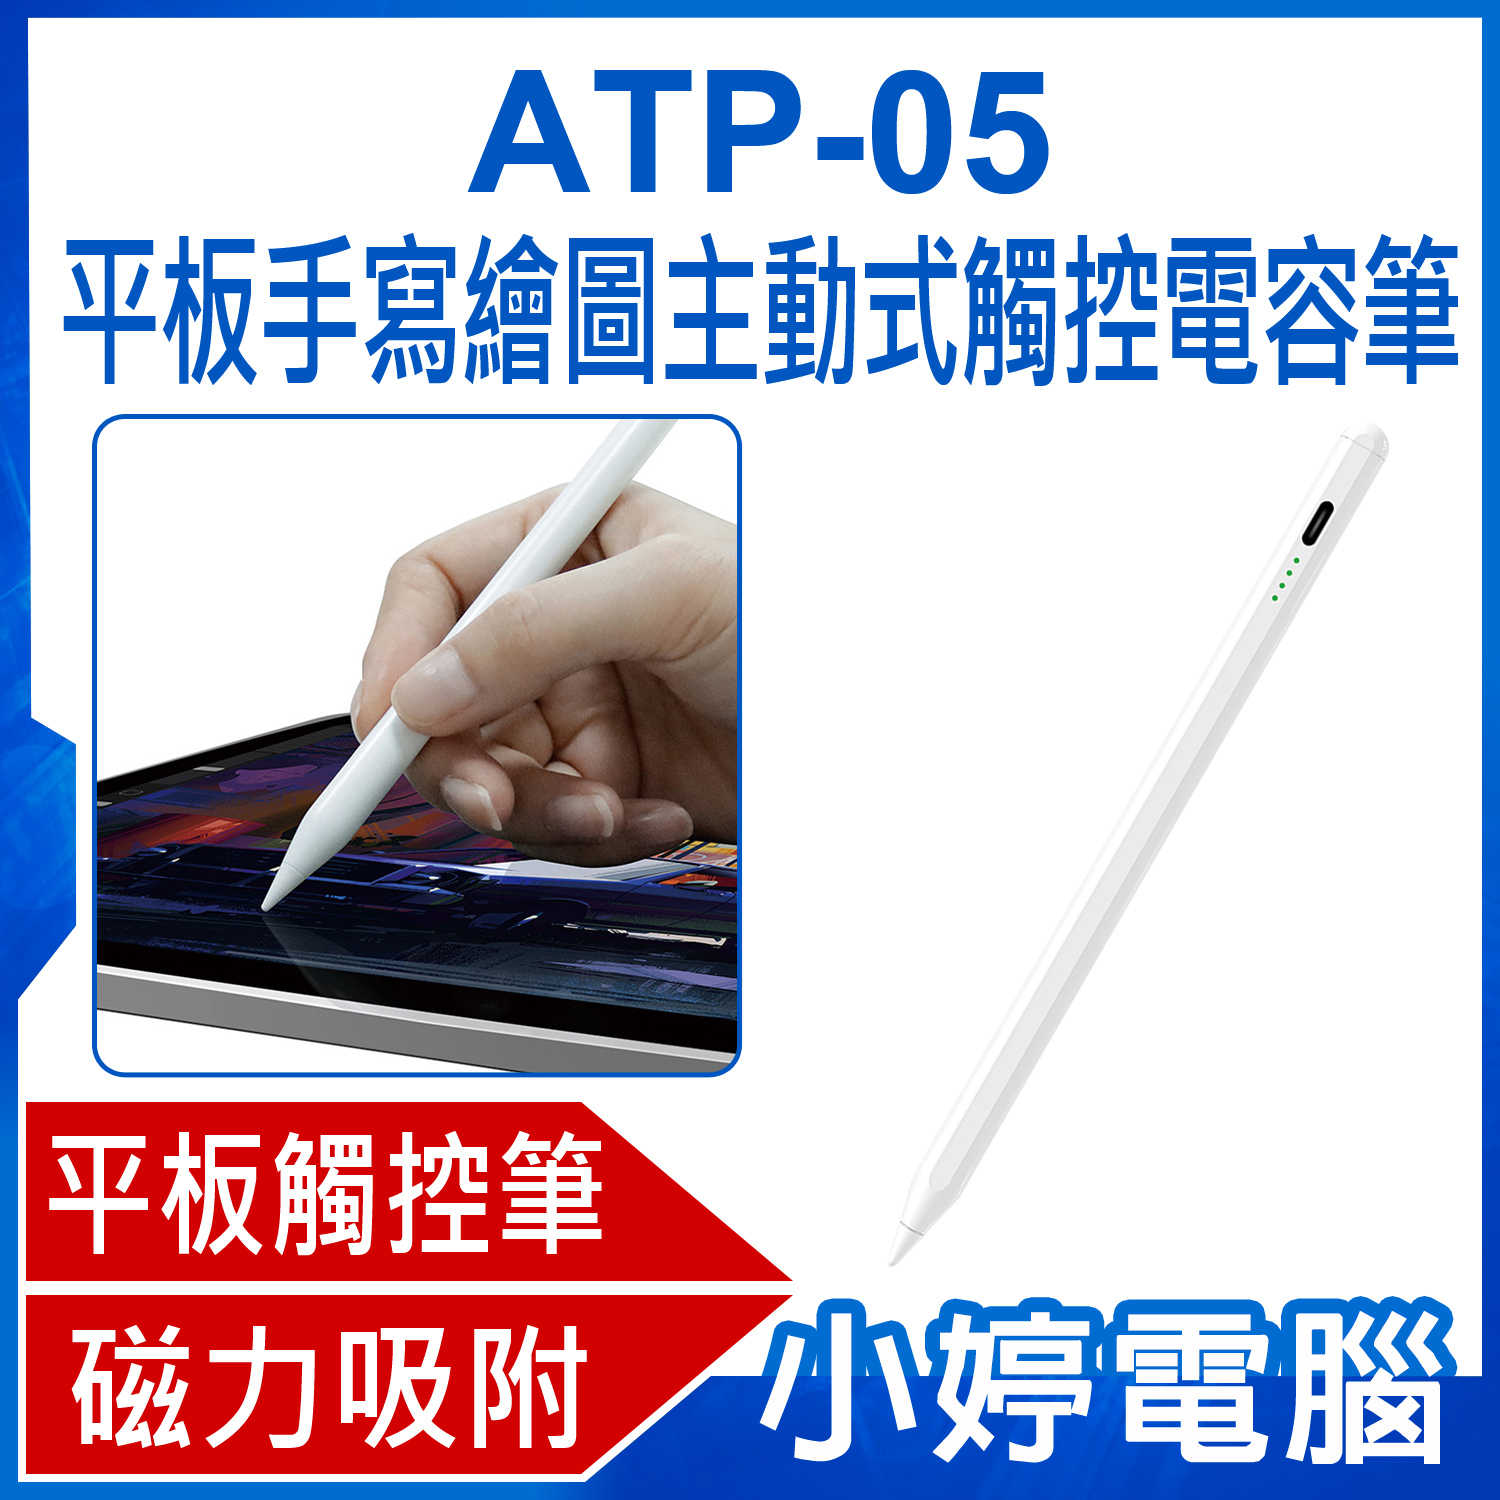 【小婷電腦】ATP-05 平板手寫繪圖主動式觸控電容筆 iPad適用 蘋果專用平板畫筆/書寫筆/電繪筆